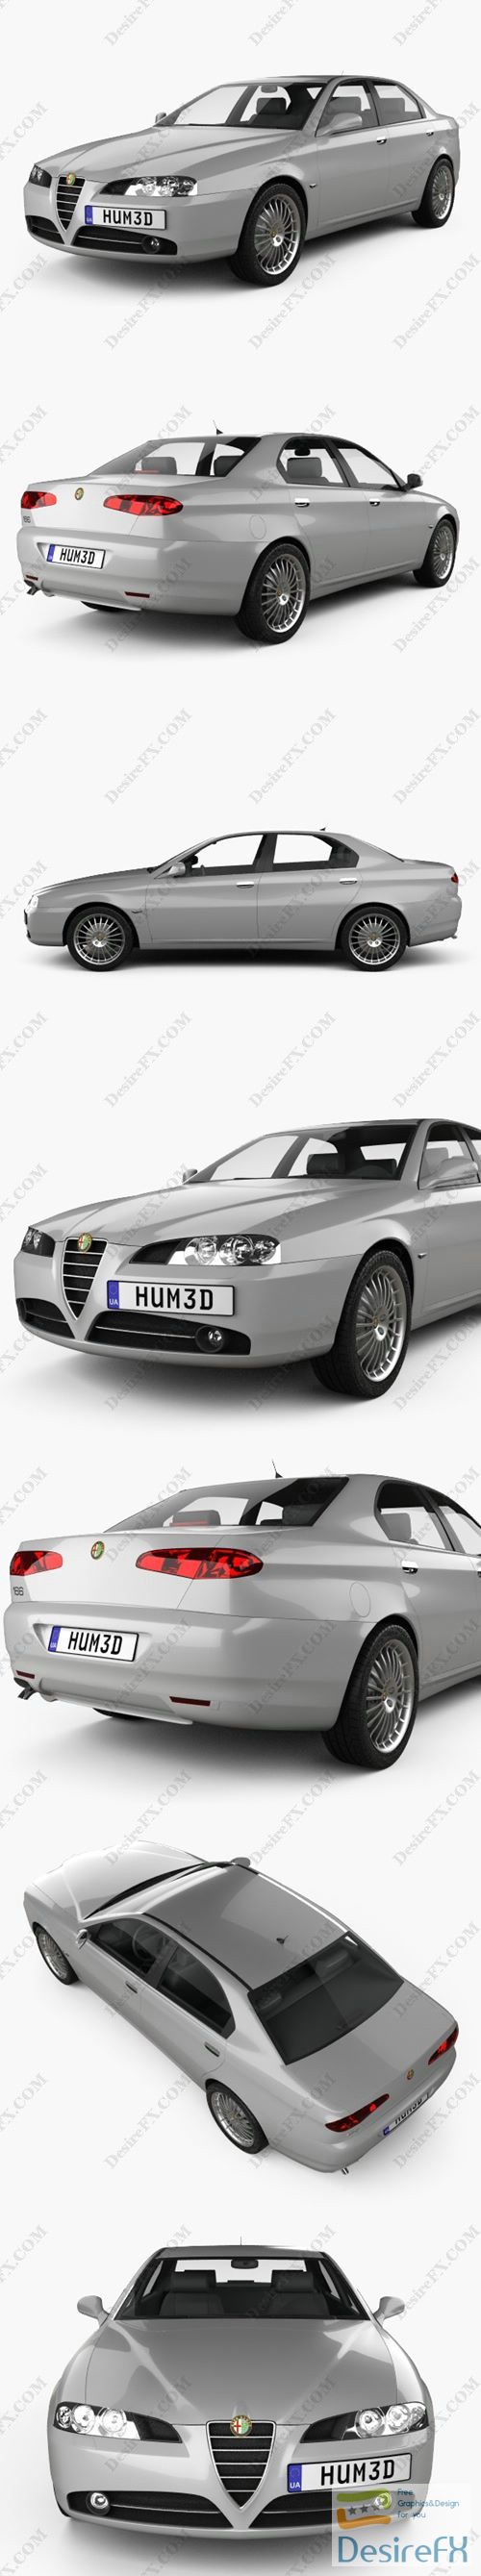 Alfa Romeo 166 2003 3D Model